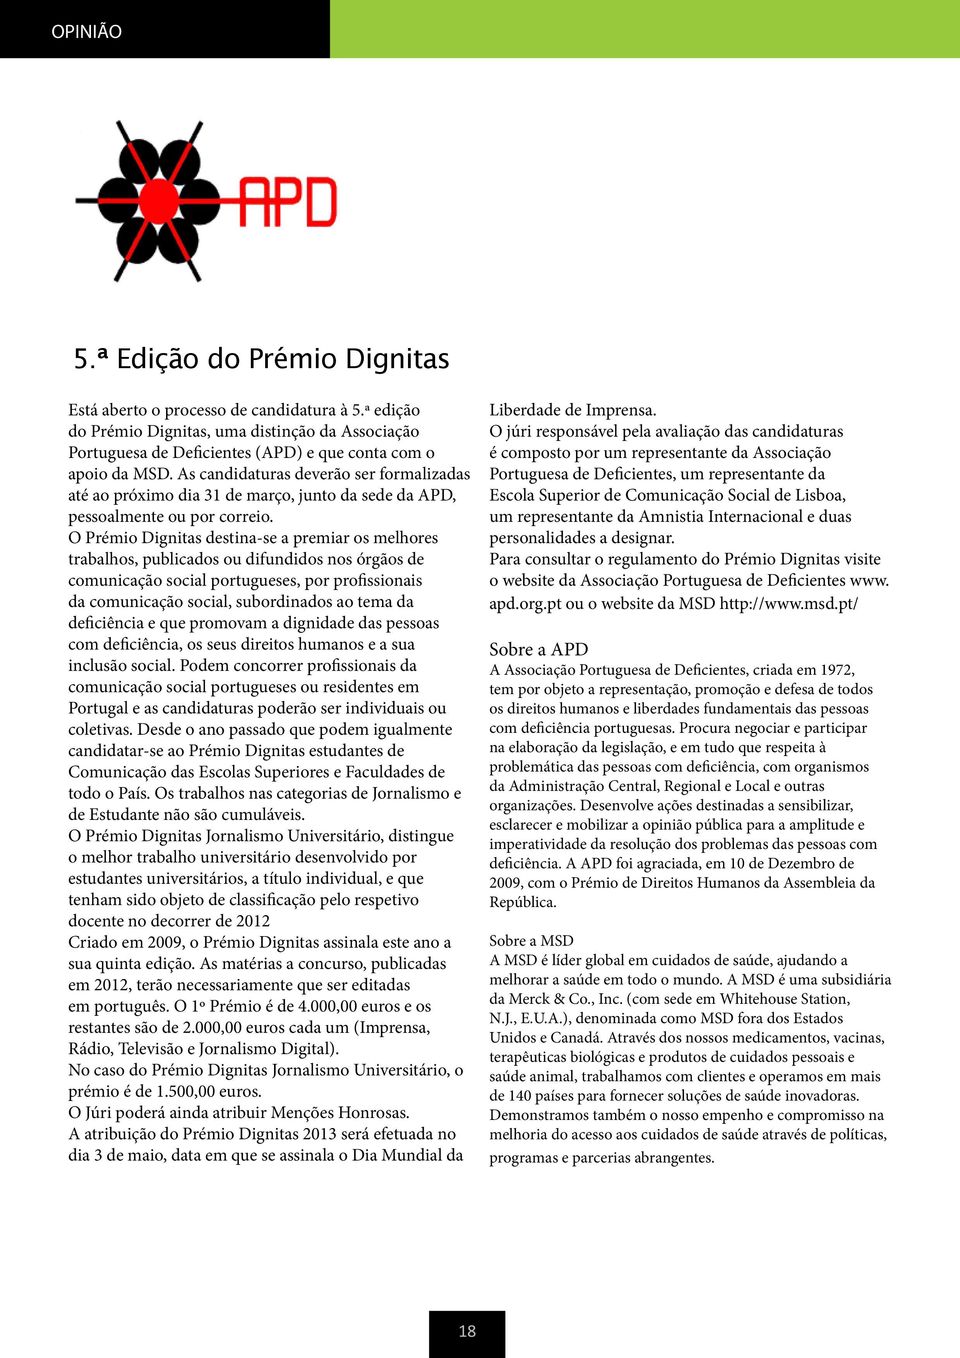 O Prémio Dignitas destina-se a premiar os melhores trabalhos, publicados ou difundidos nos órgãos de comunicação social portugueses, por profissionais da comunicação social, subordinados ao tema da